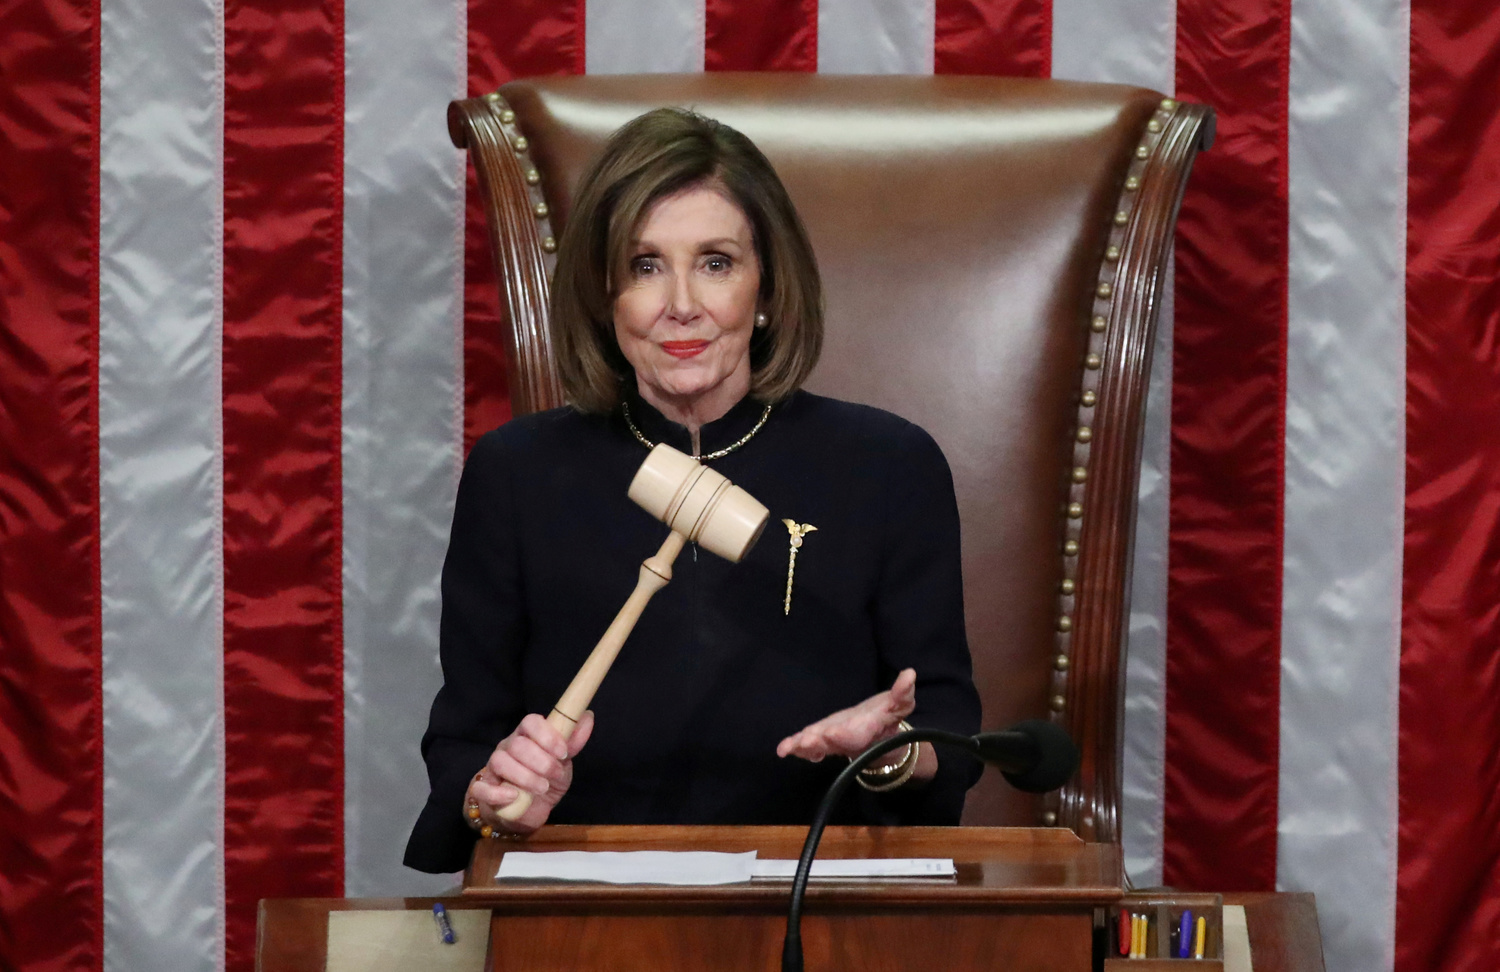 La Speaker Nancy Pelosi brandisce il martelletto mentre presiede la Camera dei Rappresentanti approvando due accuse di impeachmeant contro il Presidente degli Stati Uniti Donald Trump a Washington, USA, 18 dicembre 2019 REUTERS/Jonathan Ernst